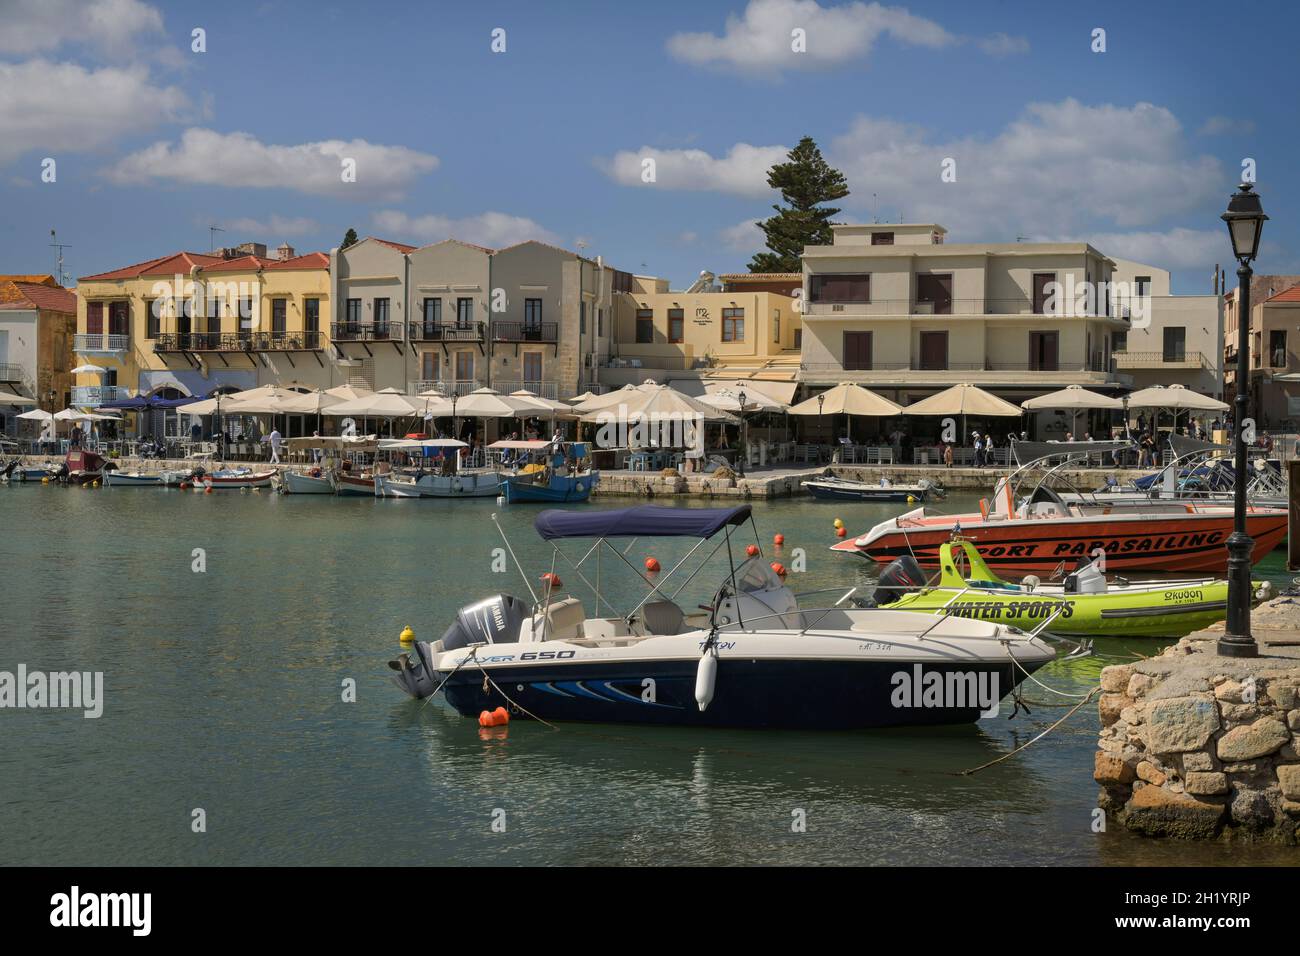 Venezianischer Hafen, Rethymno, Kreta, Griechenland Stock Photo